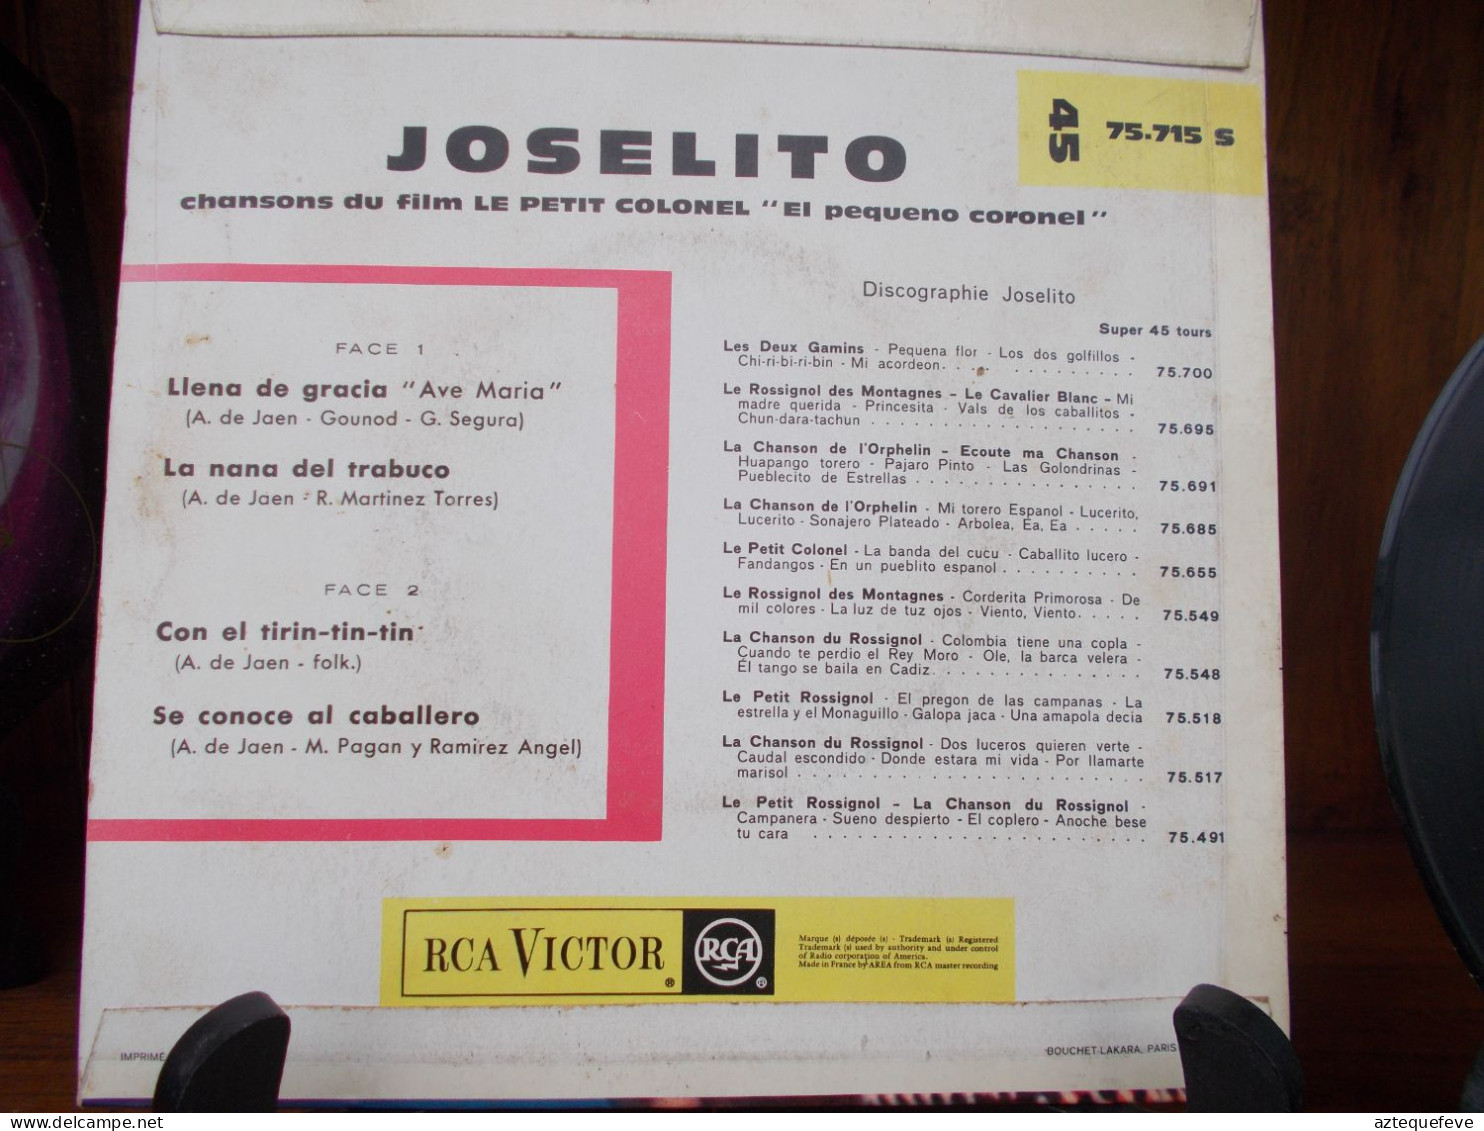 JOSELITO RCA VICTOR "LE PETIT COLONEL" Etc.. 45 T 75.715 S - Formati Speciali